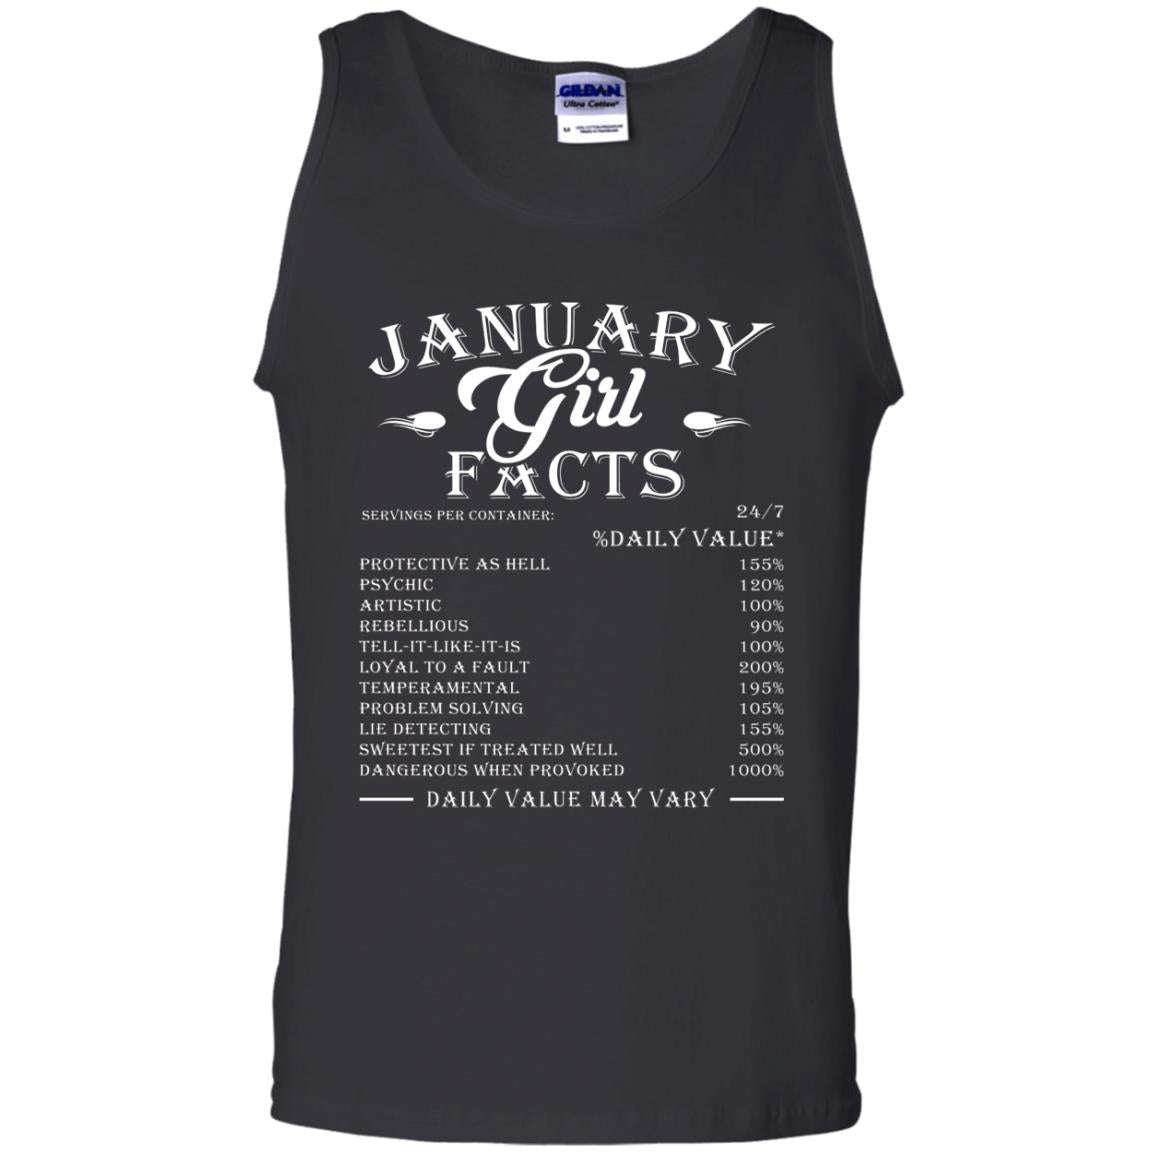 January Girl Facts Facts T-shirtG220 Gildan 100% Cotton Tank Top